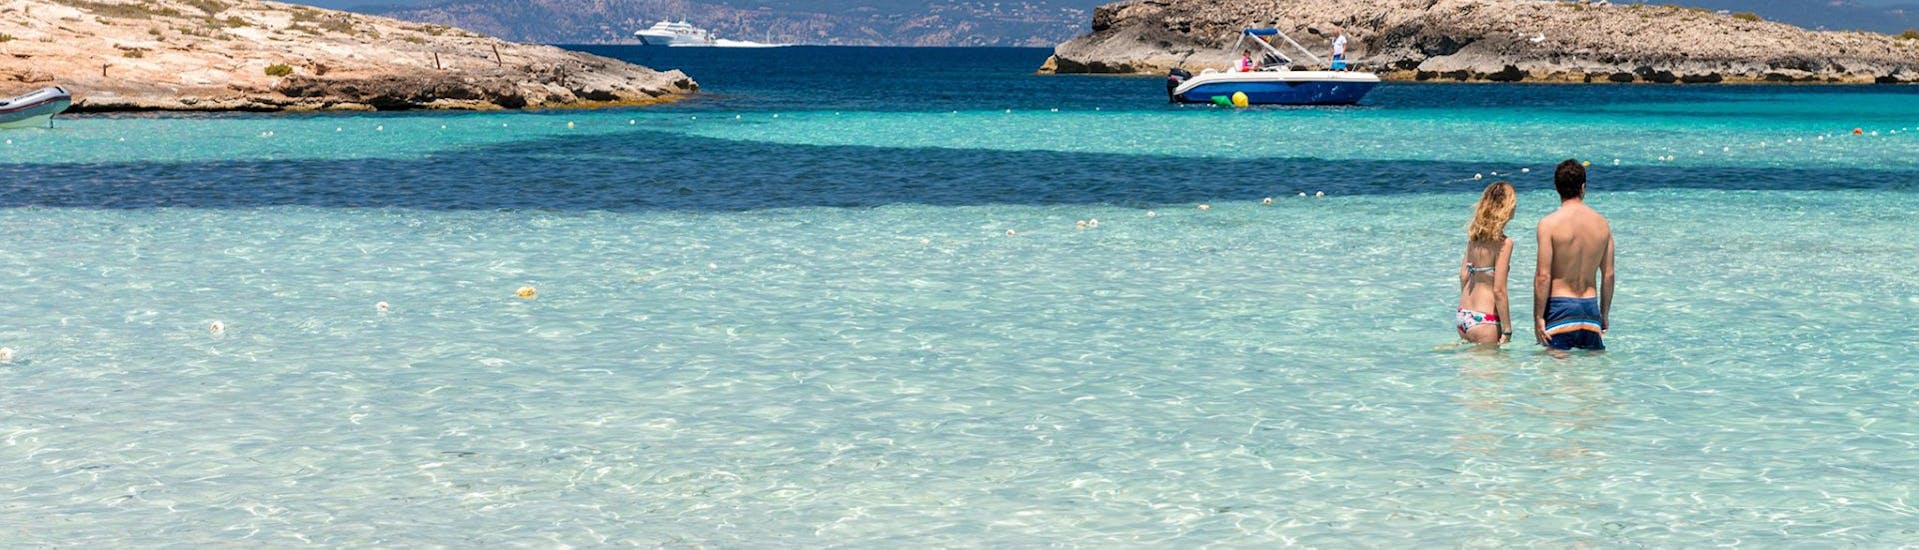 Personen im kristallklarem Wasser an einem wunderschönem Strand während der Katamaran-Tour nach Cala Saona oder Llevant mit Aperitif und Schwimmstopps.